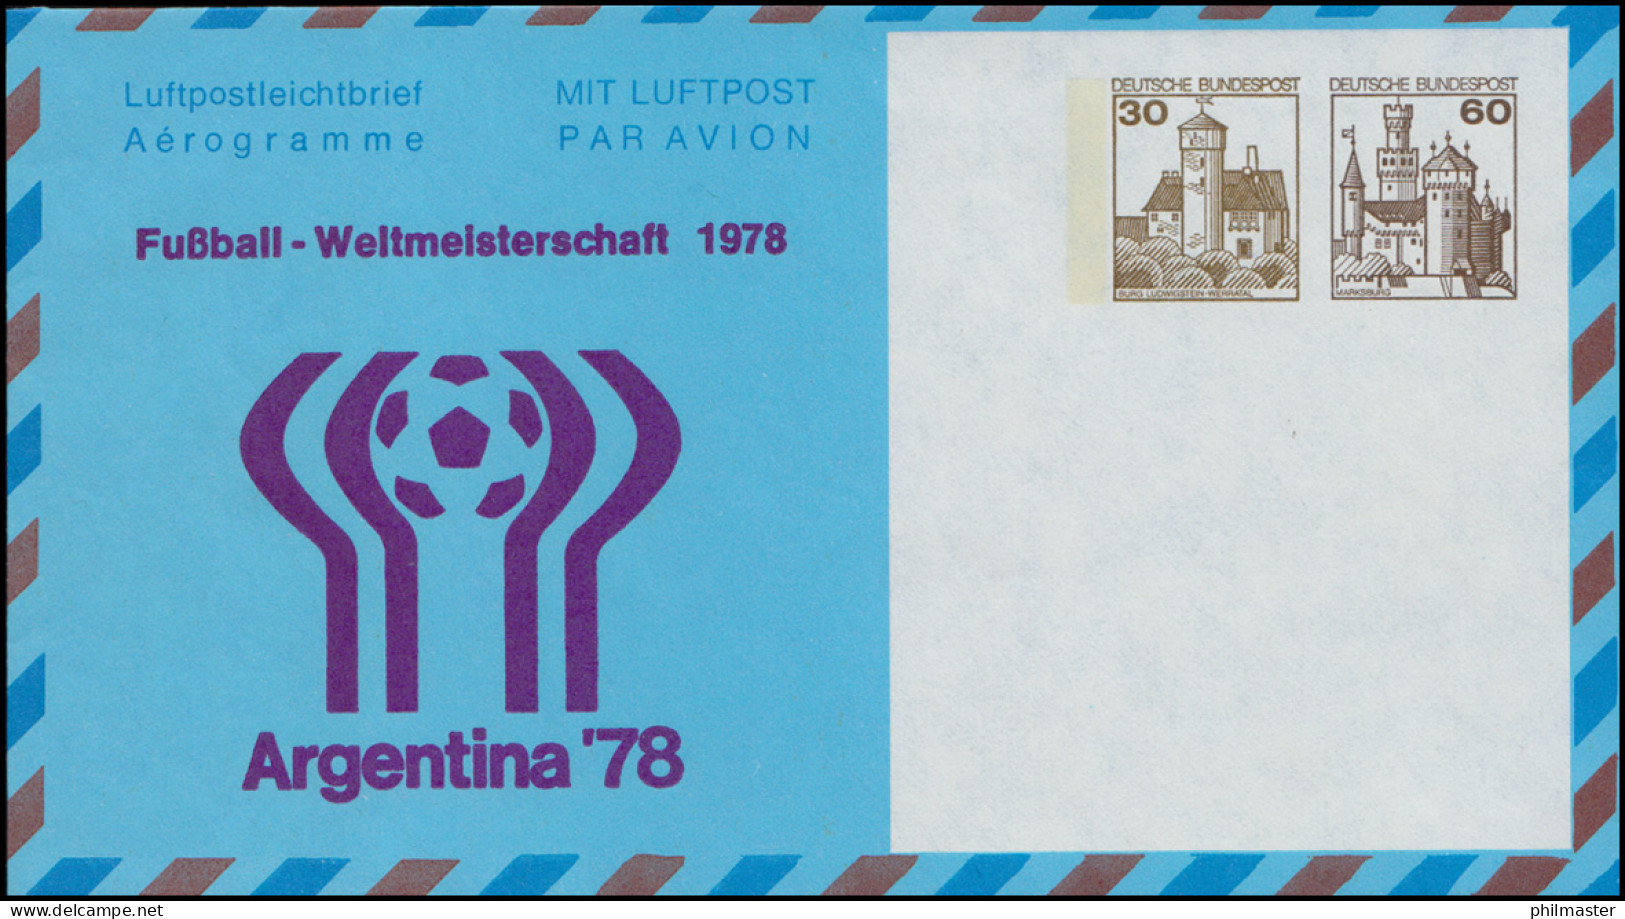 Privatfaltbrief / Aerogramm PF 30/2 Fußball-WM Argentina'78, Postfrisch  - Enveloppes Privées - Neuves